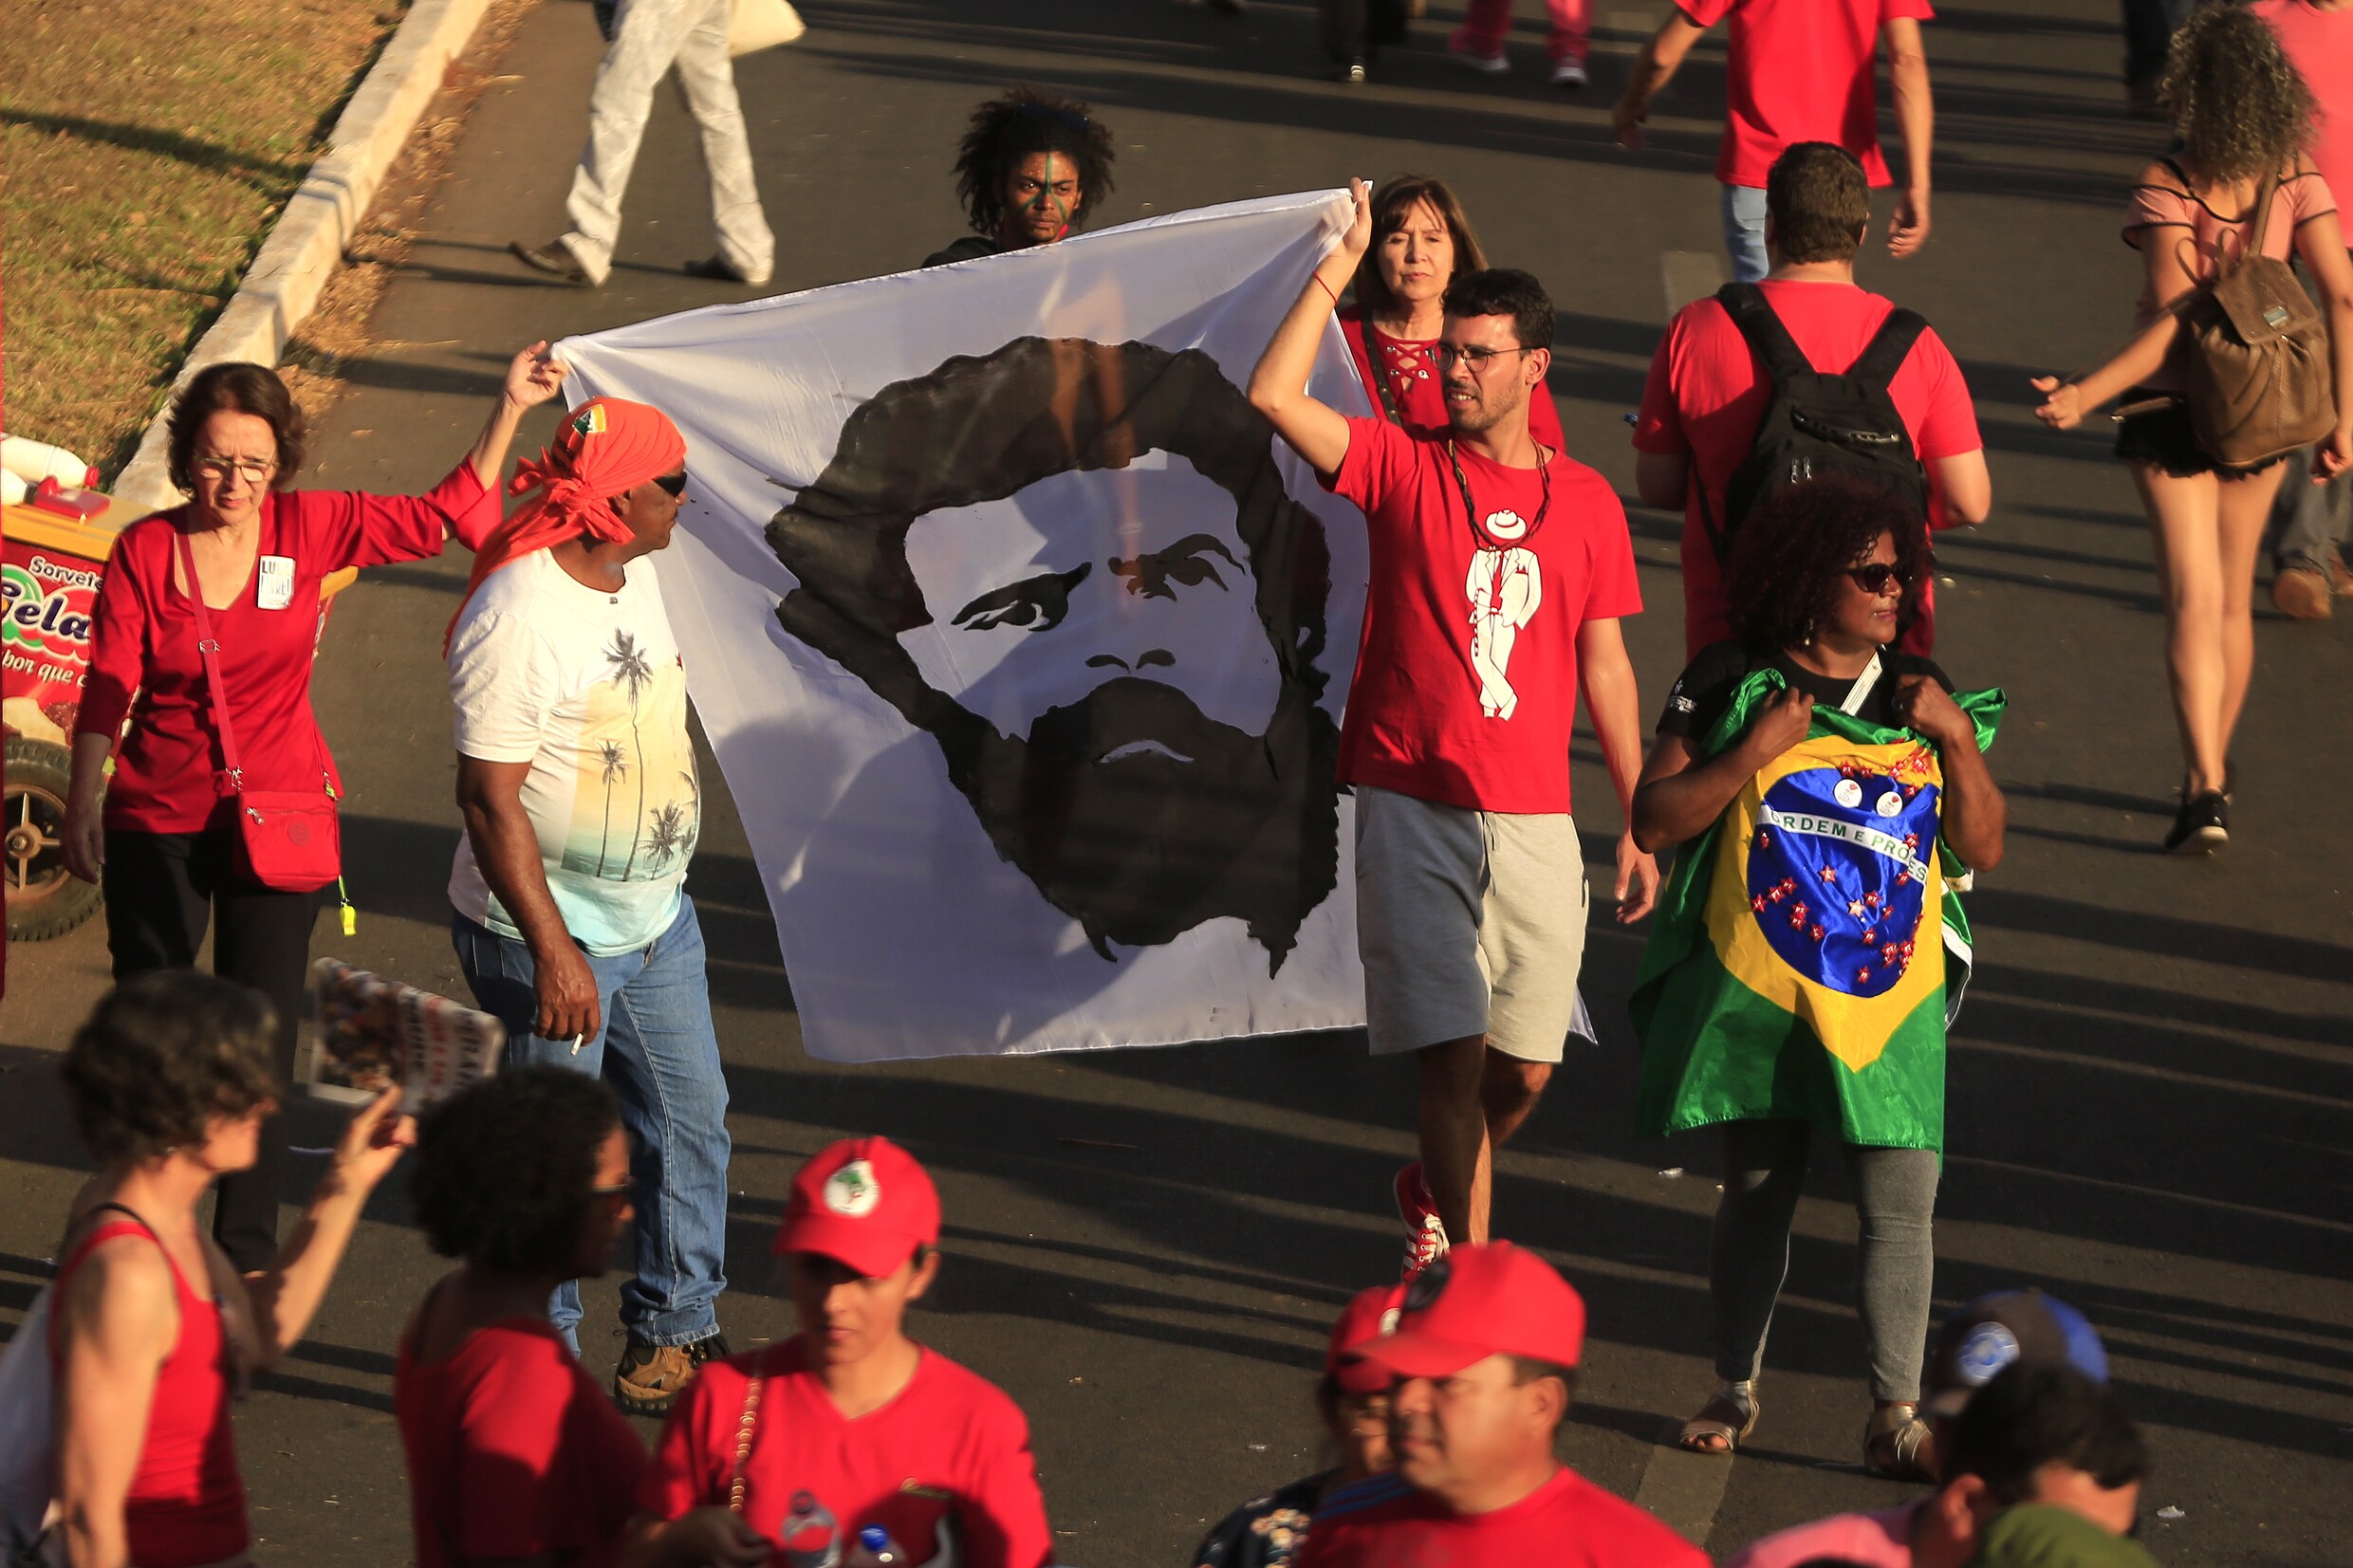 Opgesloten Lula geregistreerd als presidentskandidaat in Brazilië: met voorsprong populairste kandidaat